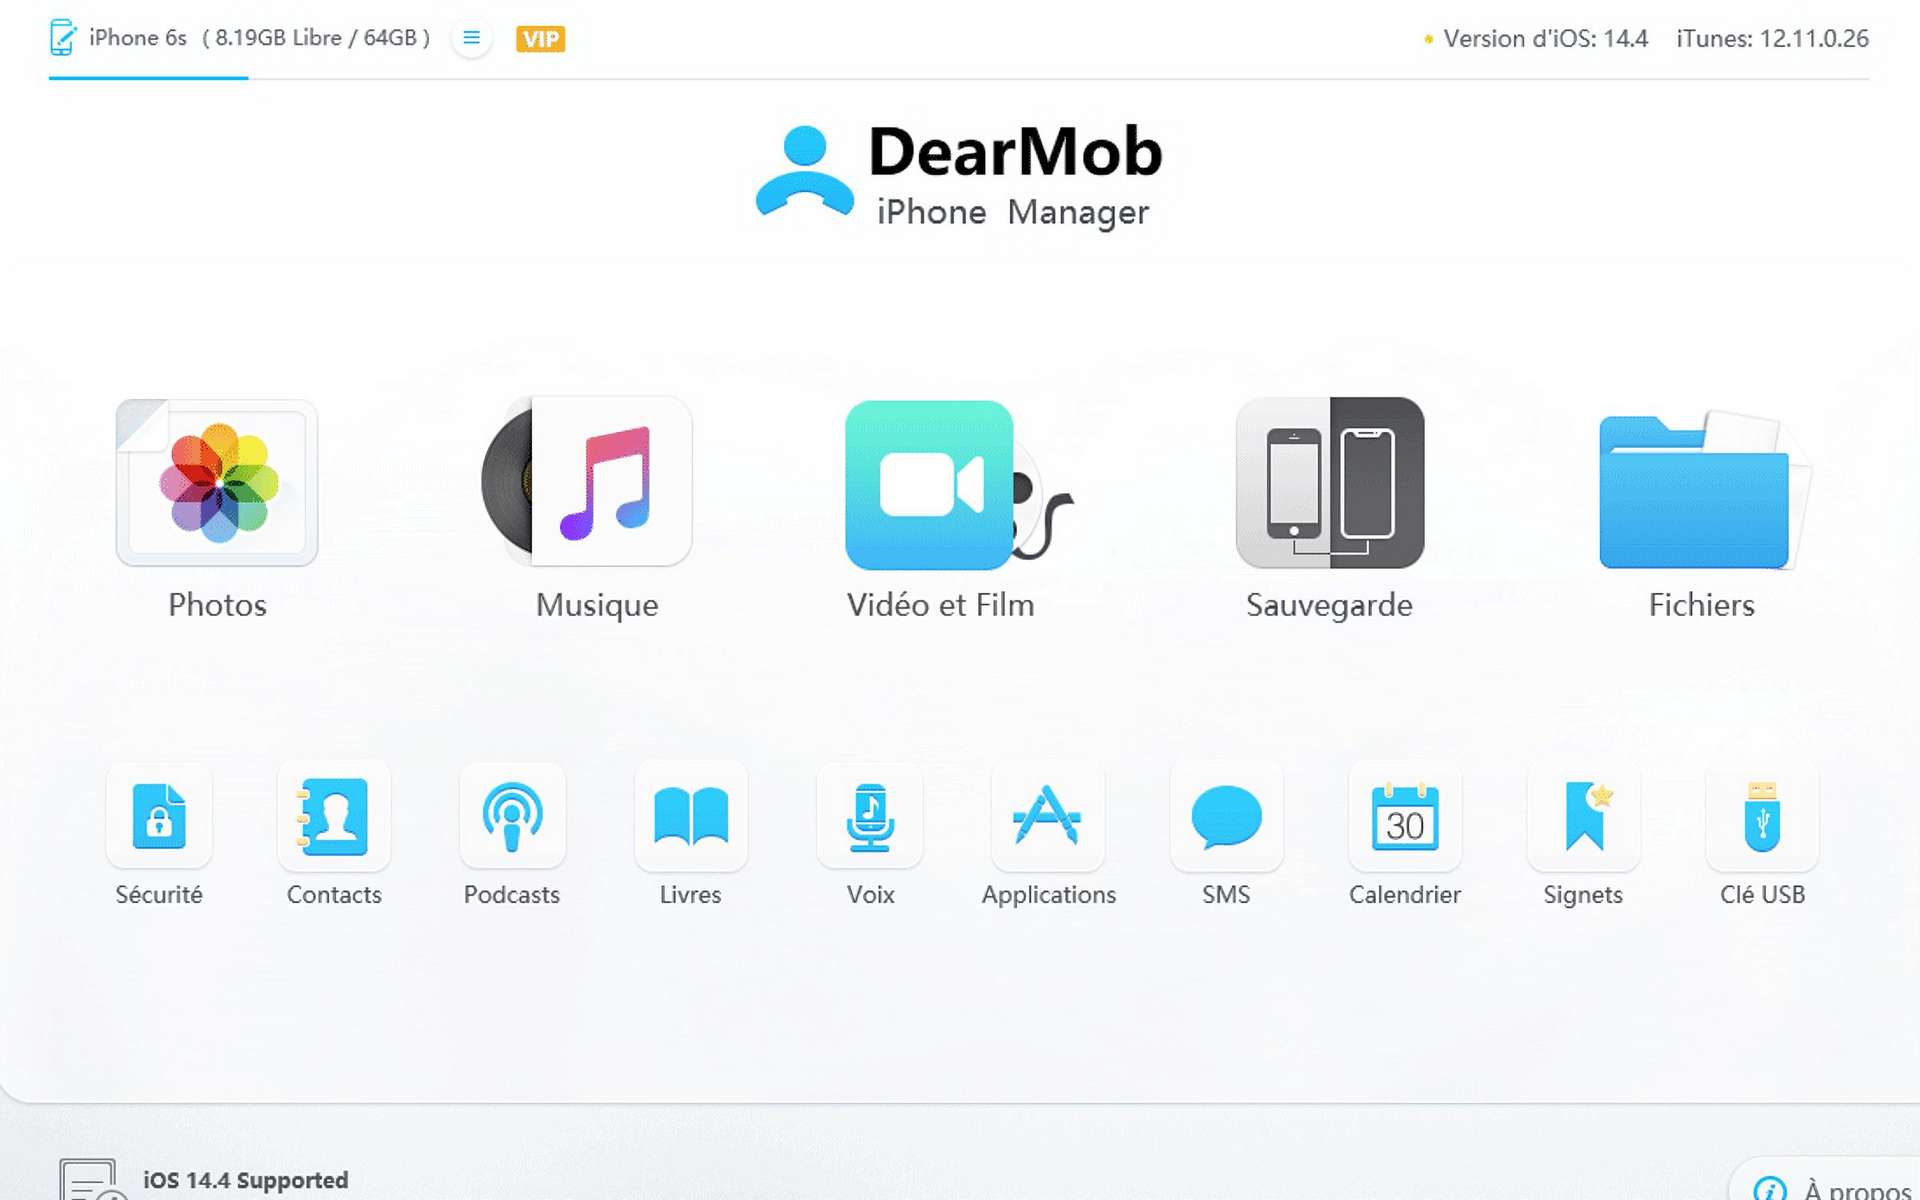 Bon plan de dernière minute : la licence DearMob iPhone Manager passe à 28 ¬